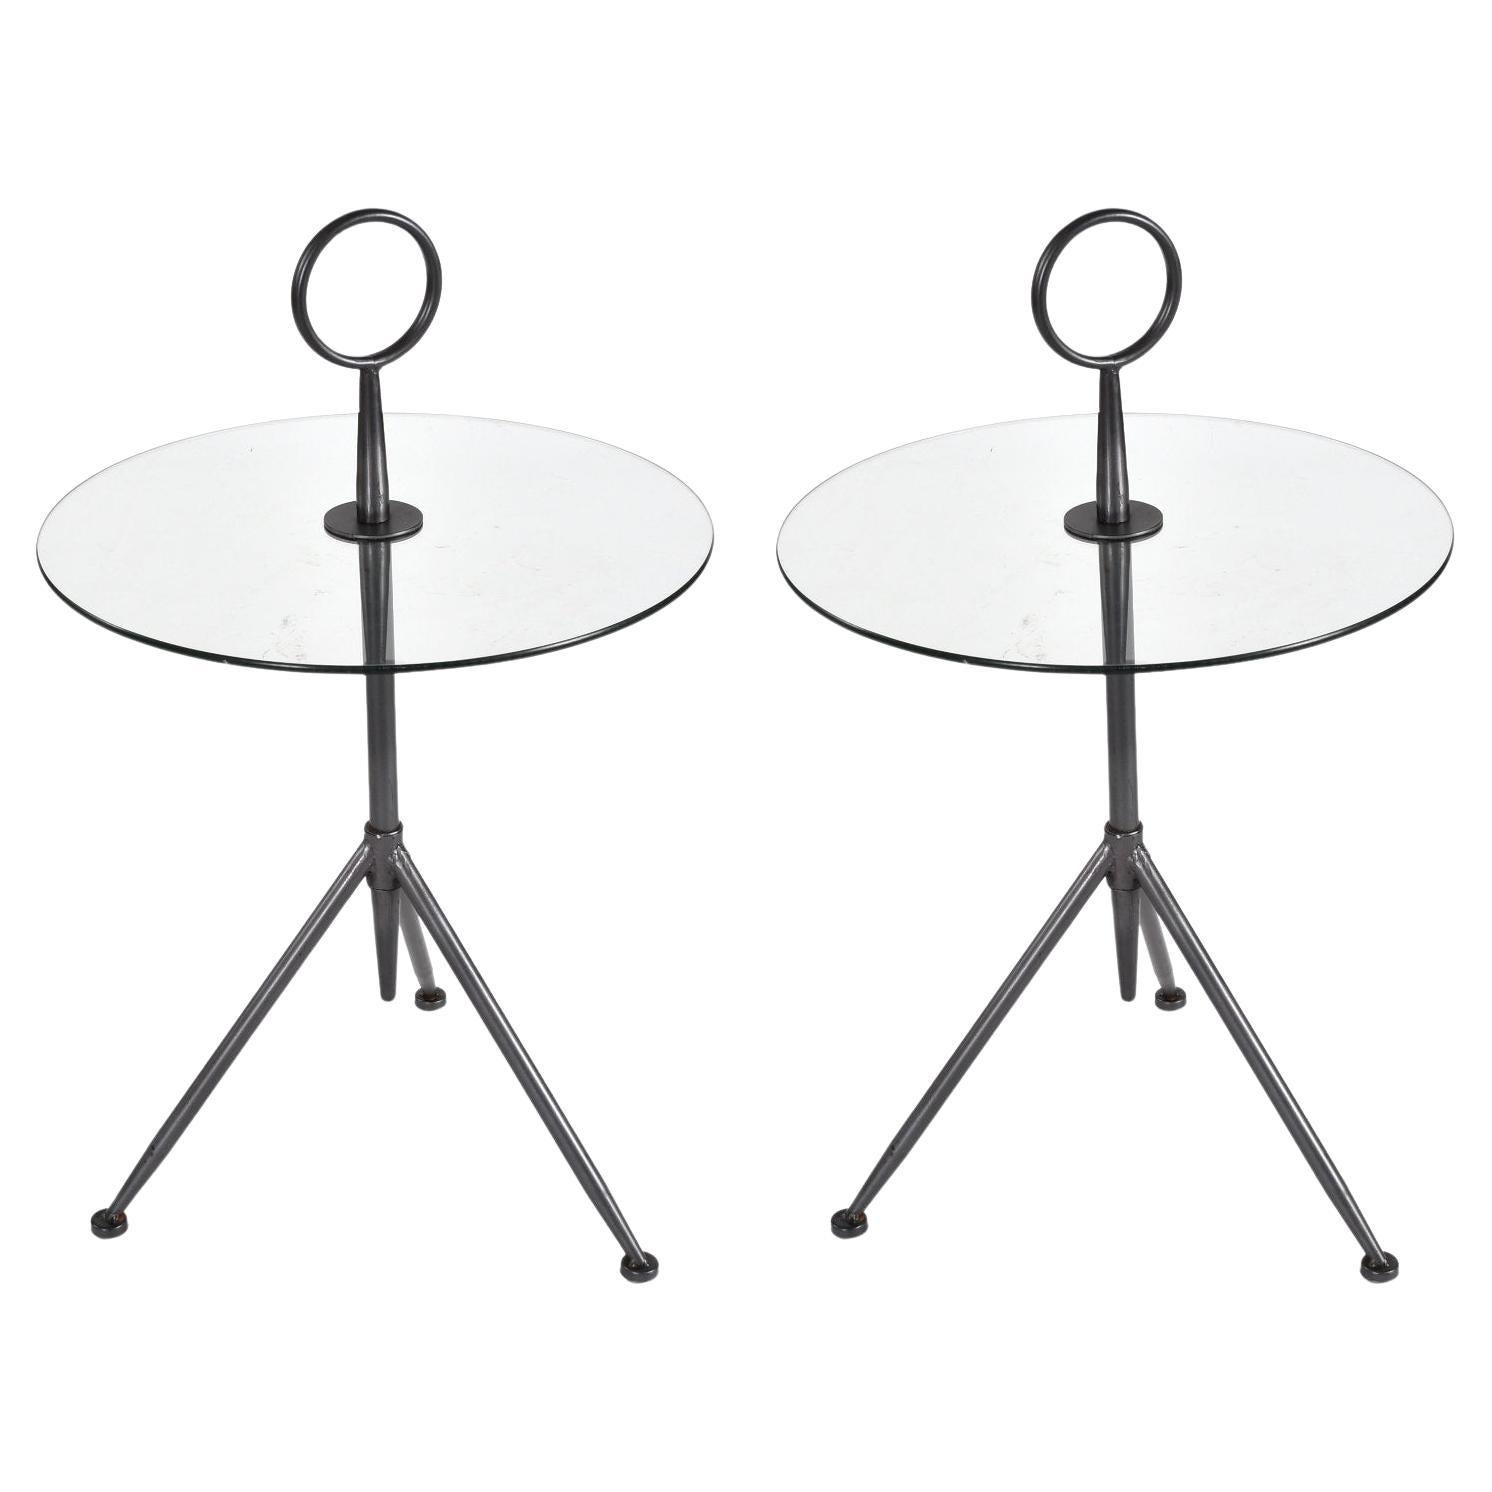 Paire de tables d'appoint Guéridon rondes italiennes modernes en verre avec bases tripodes en acier